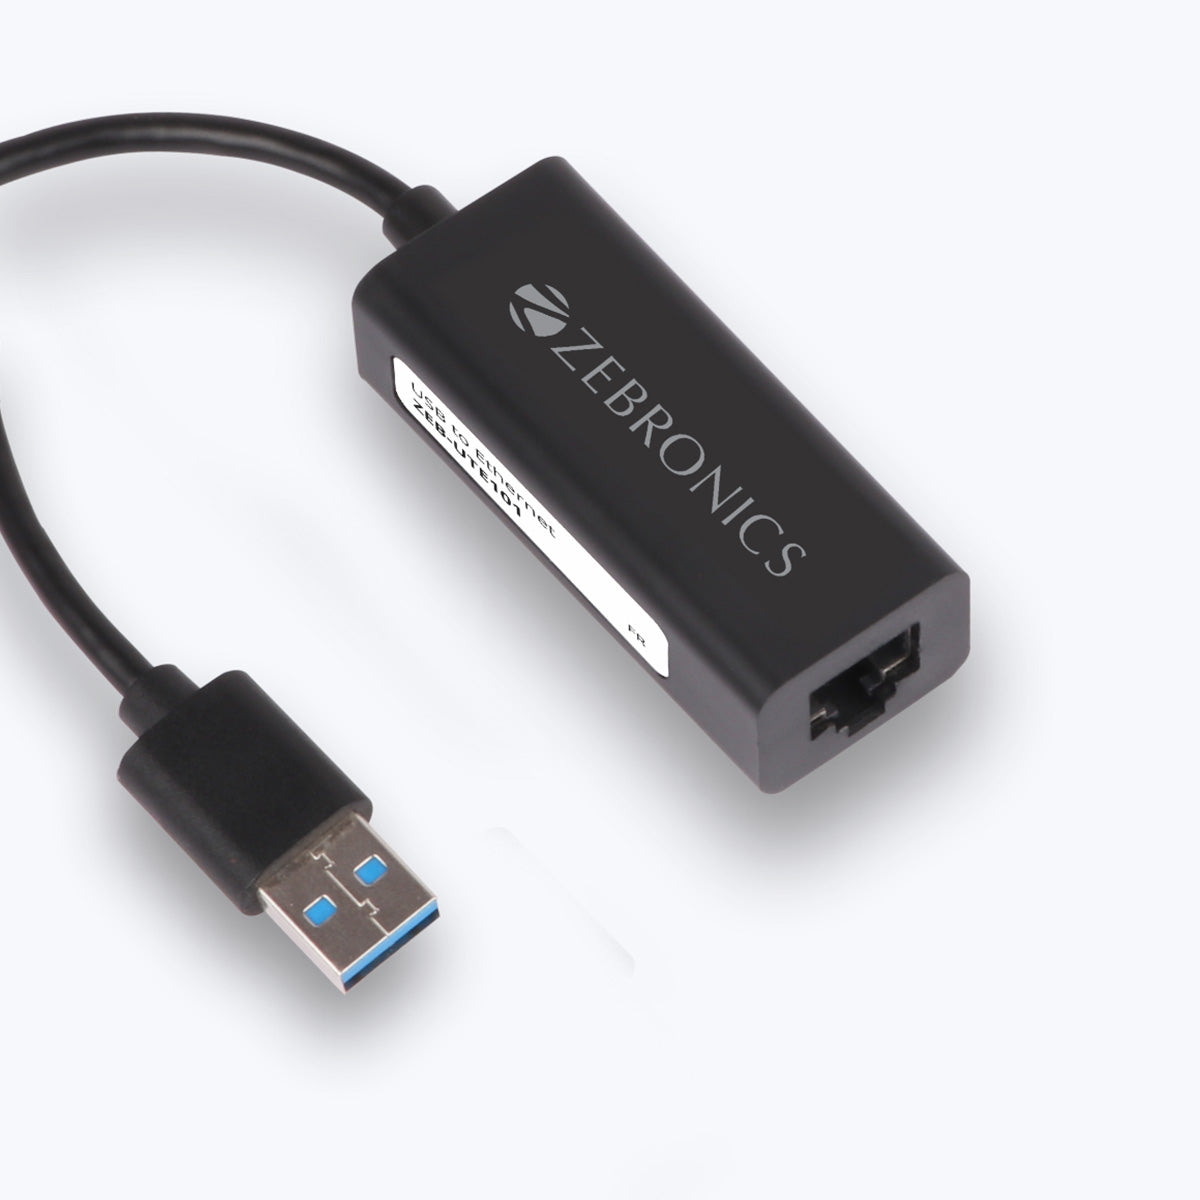 Zeb-UTE101 - USB Device - Zebronics